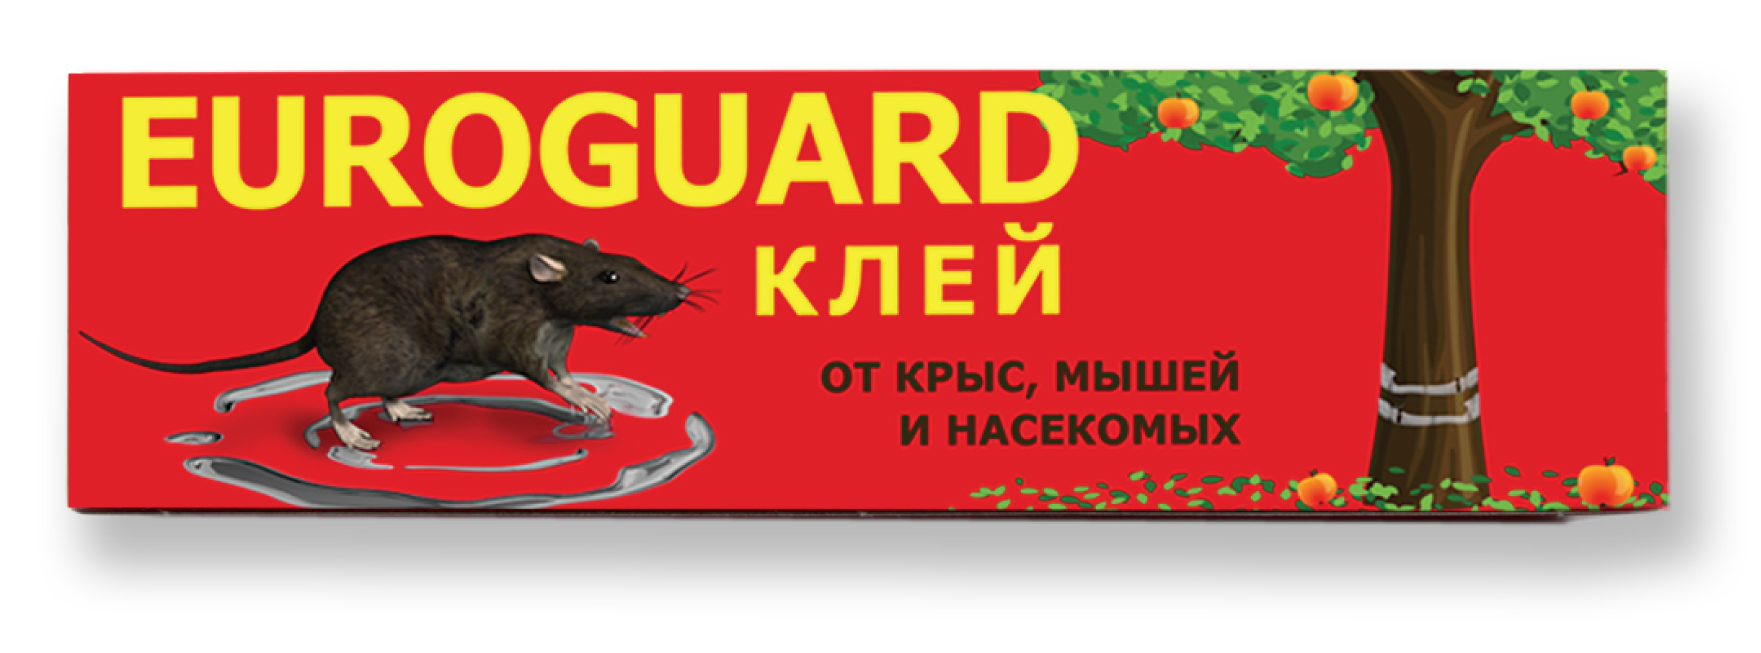 Фото упаковки клея Euroguard